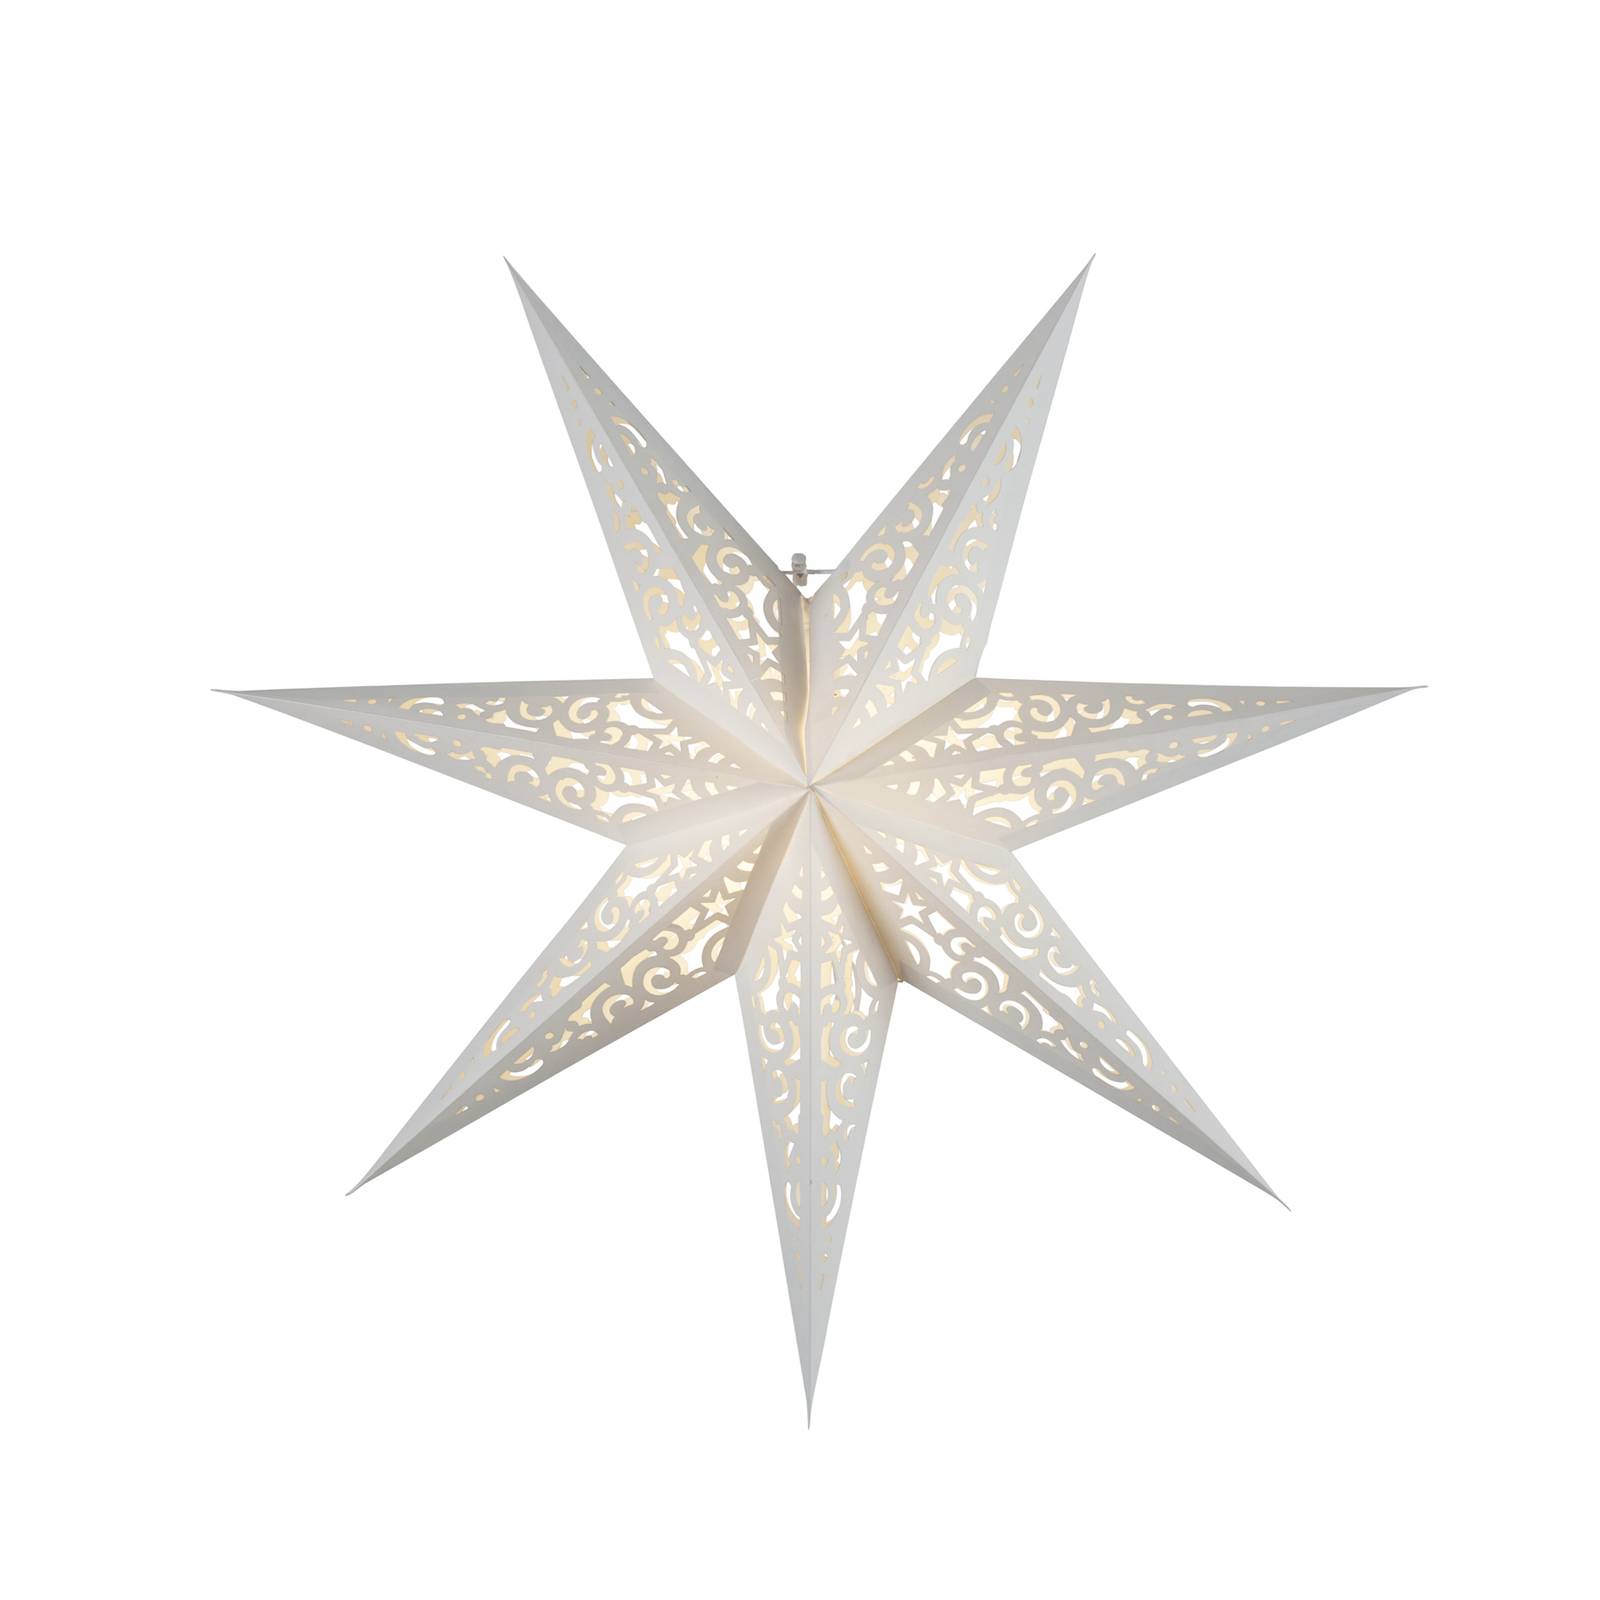 STAR TRADING Papierstern Lace, ohne Beleuchtung Ø 45 cm, weiß